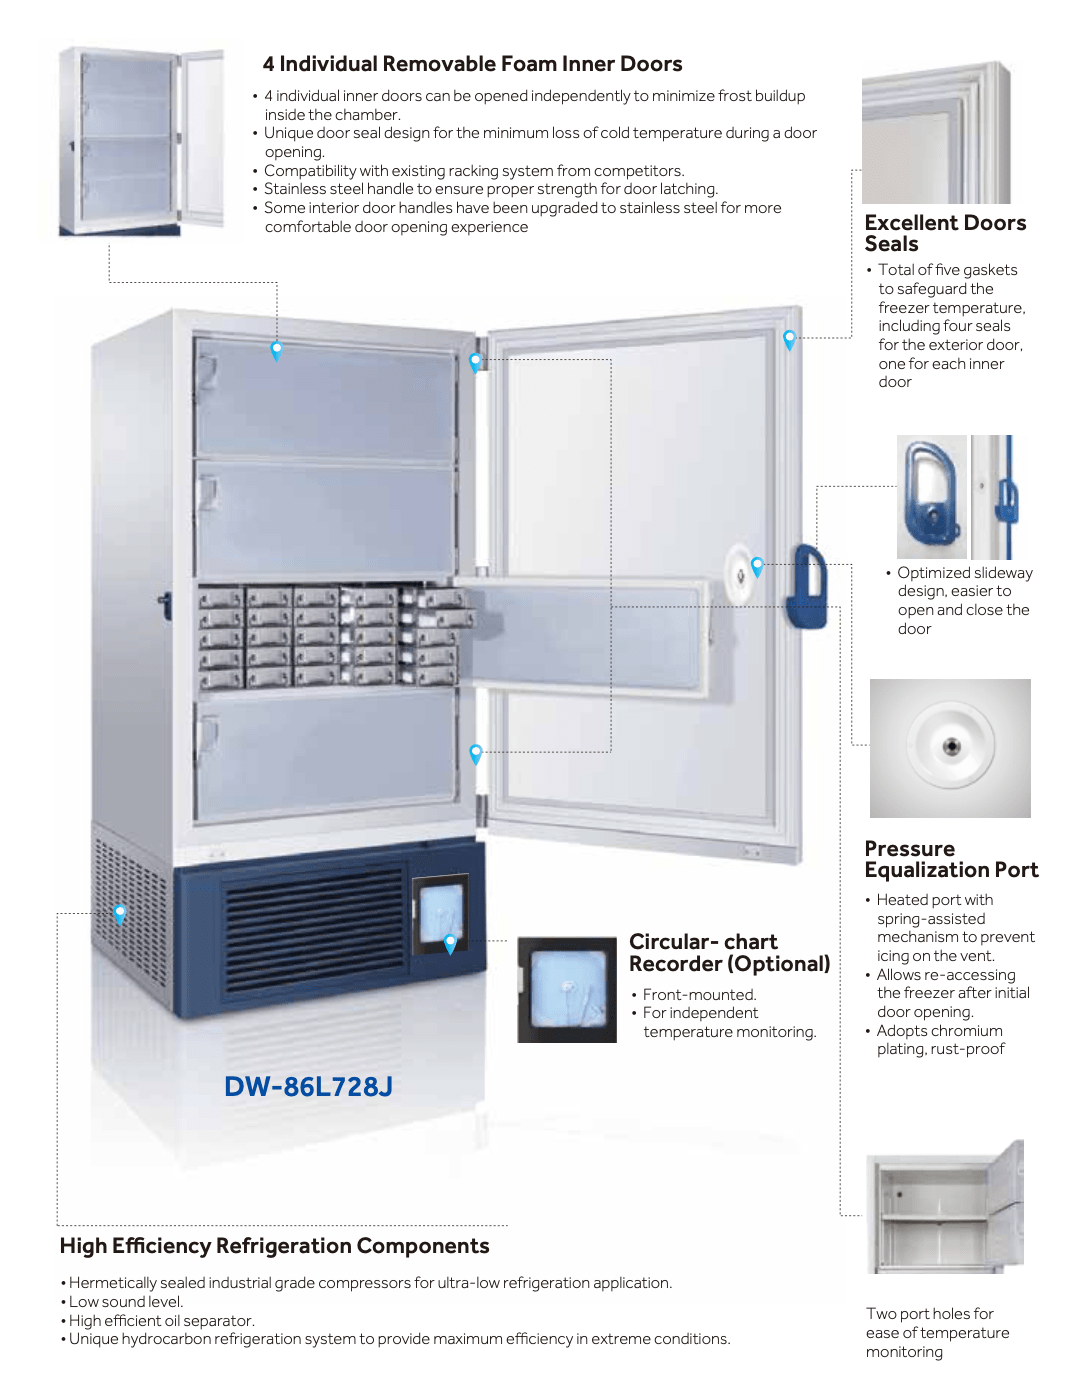 Thiết kế tủ lạnh âm 86 độ C Haier DW-86L728J